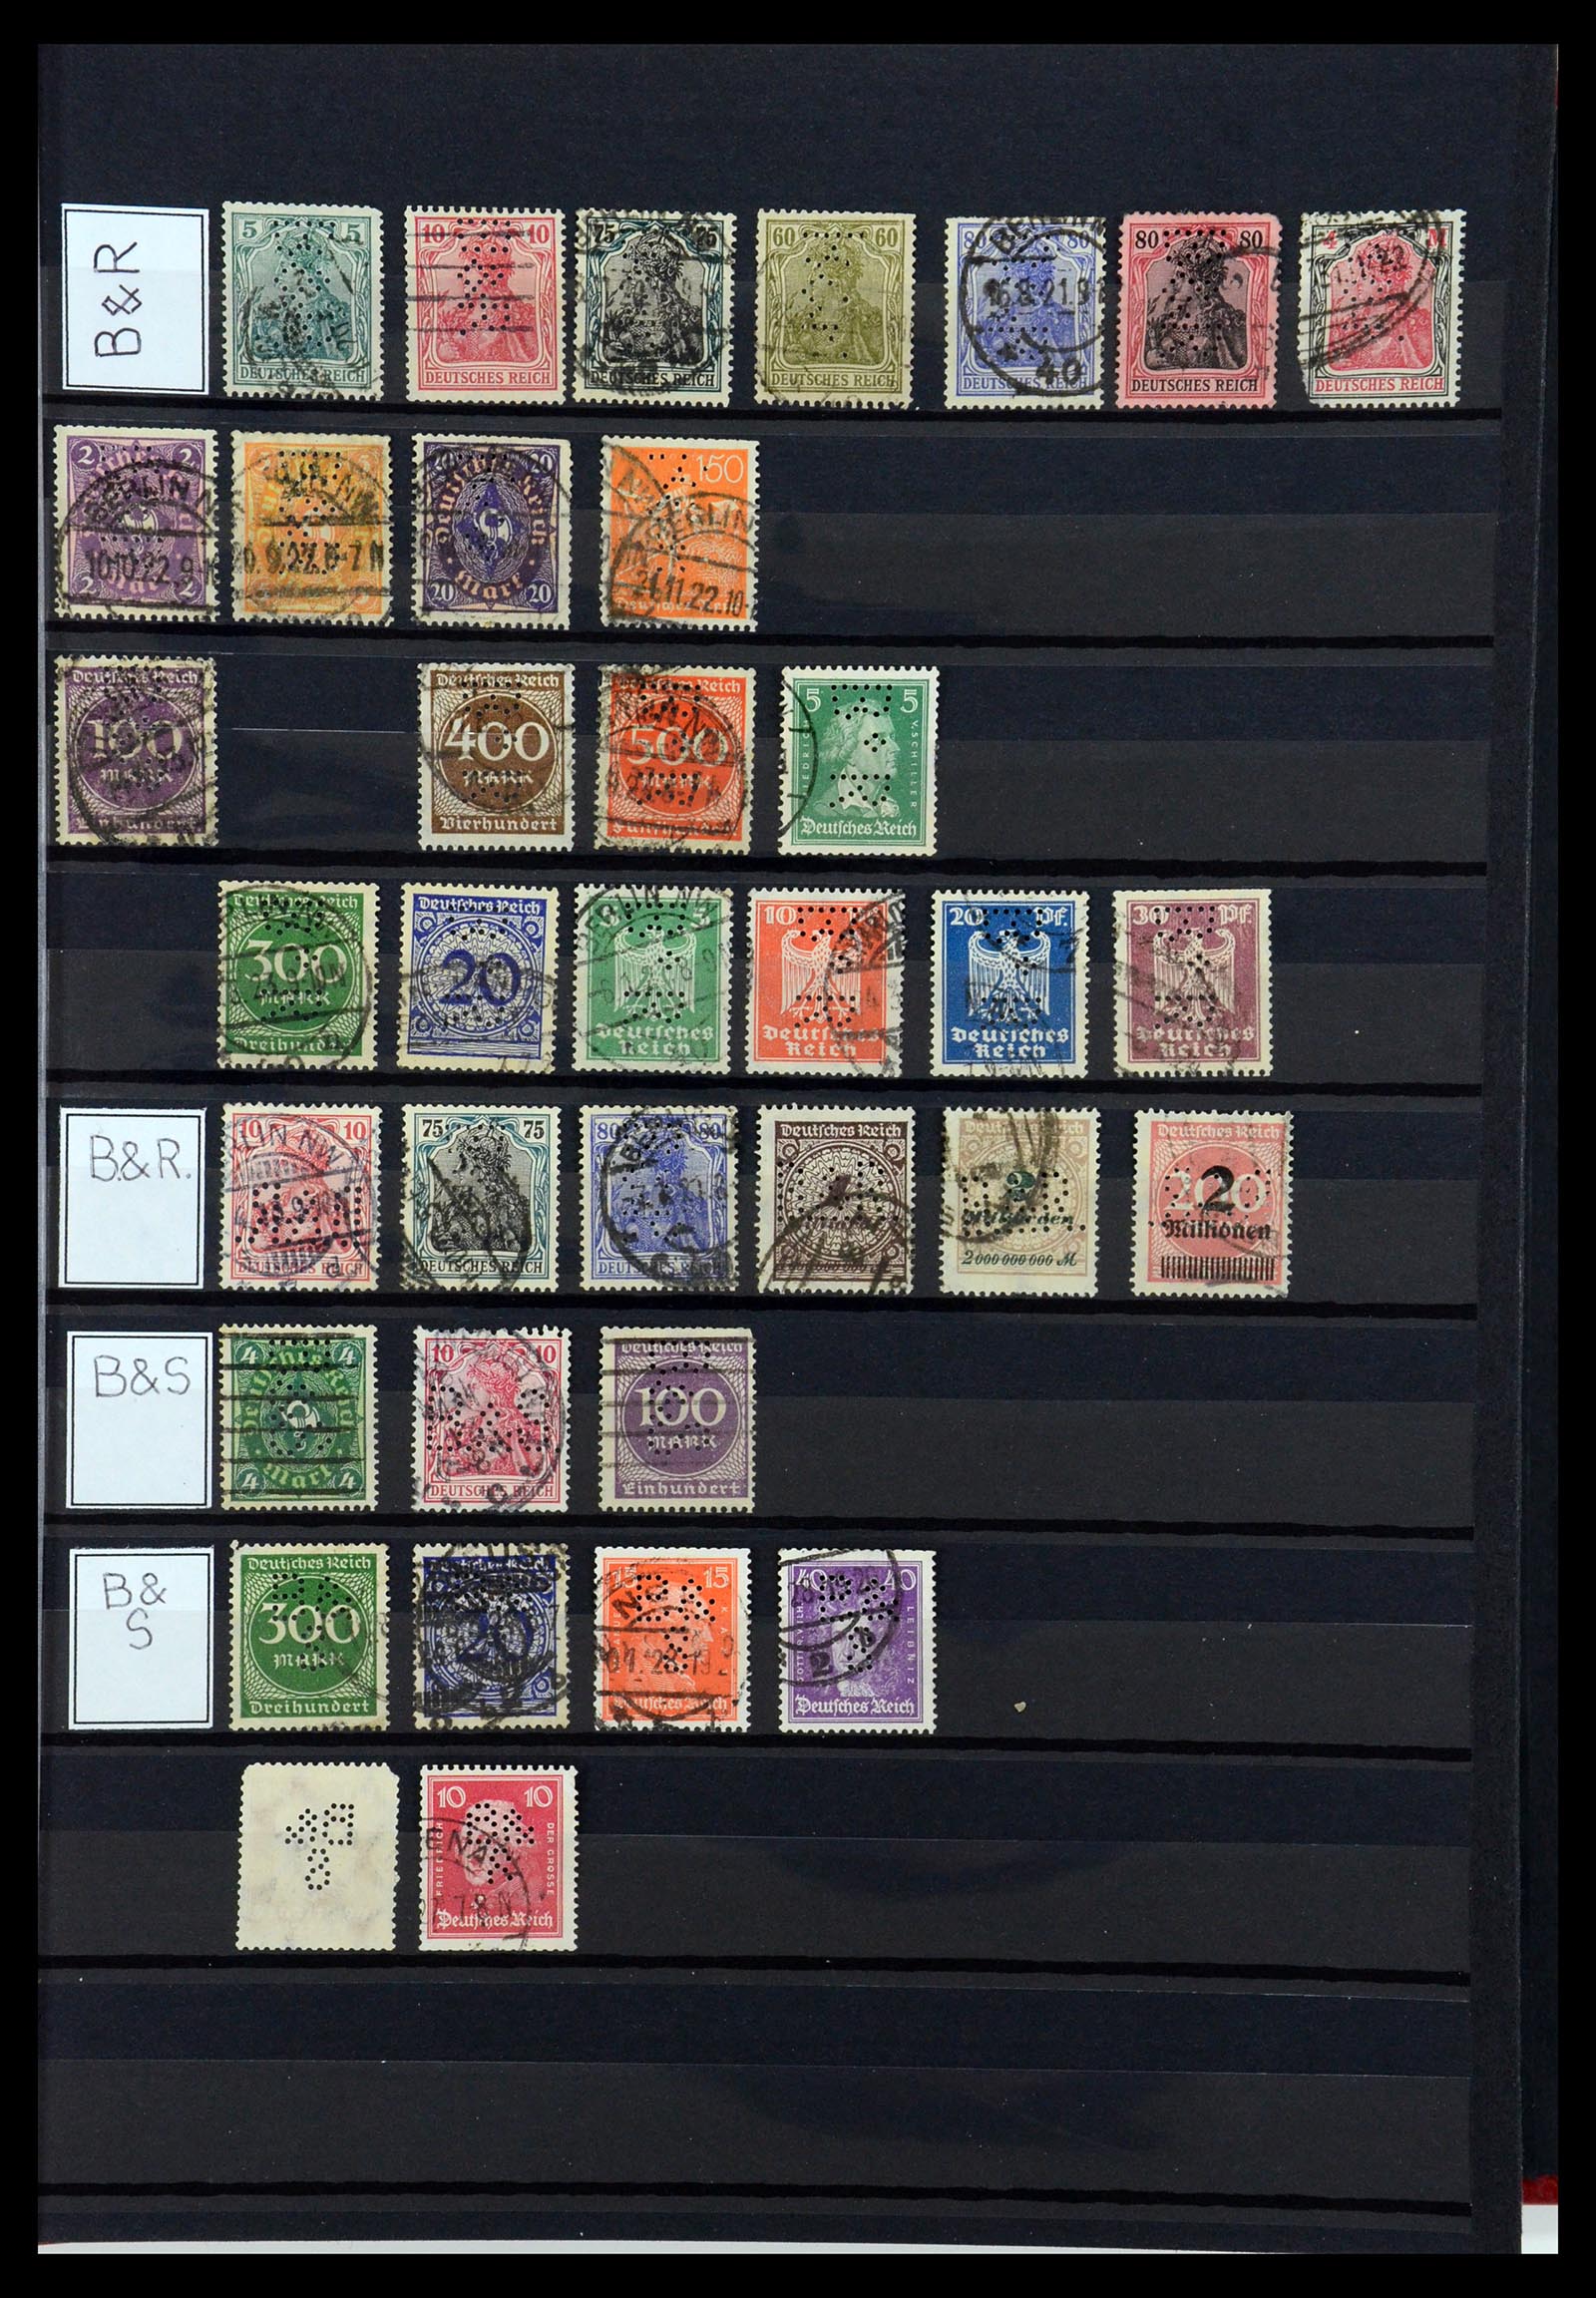 36405 053 - Stamp collection 36405 German Reich perfins 1880-1945.